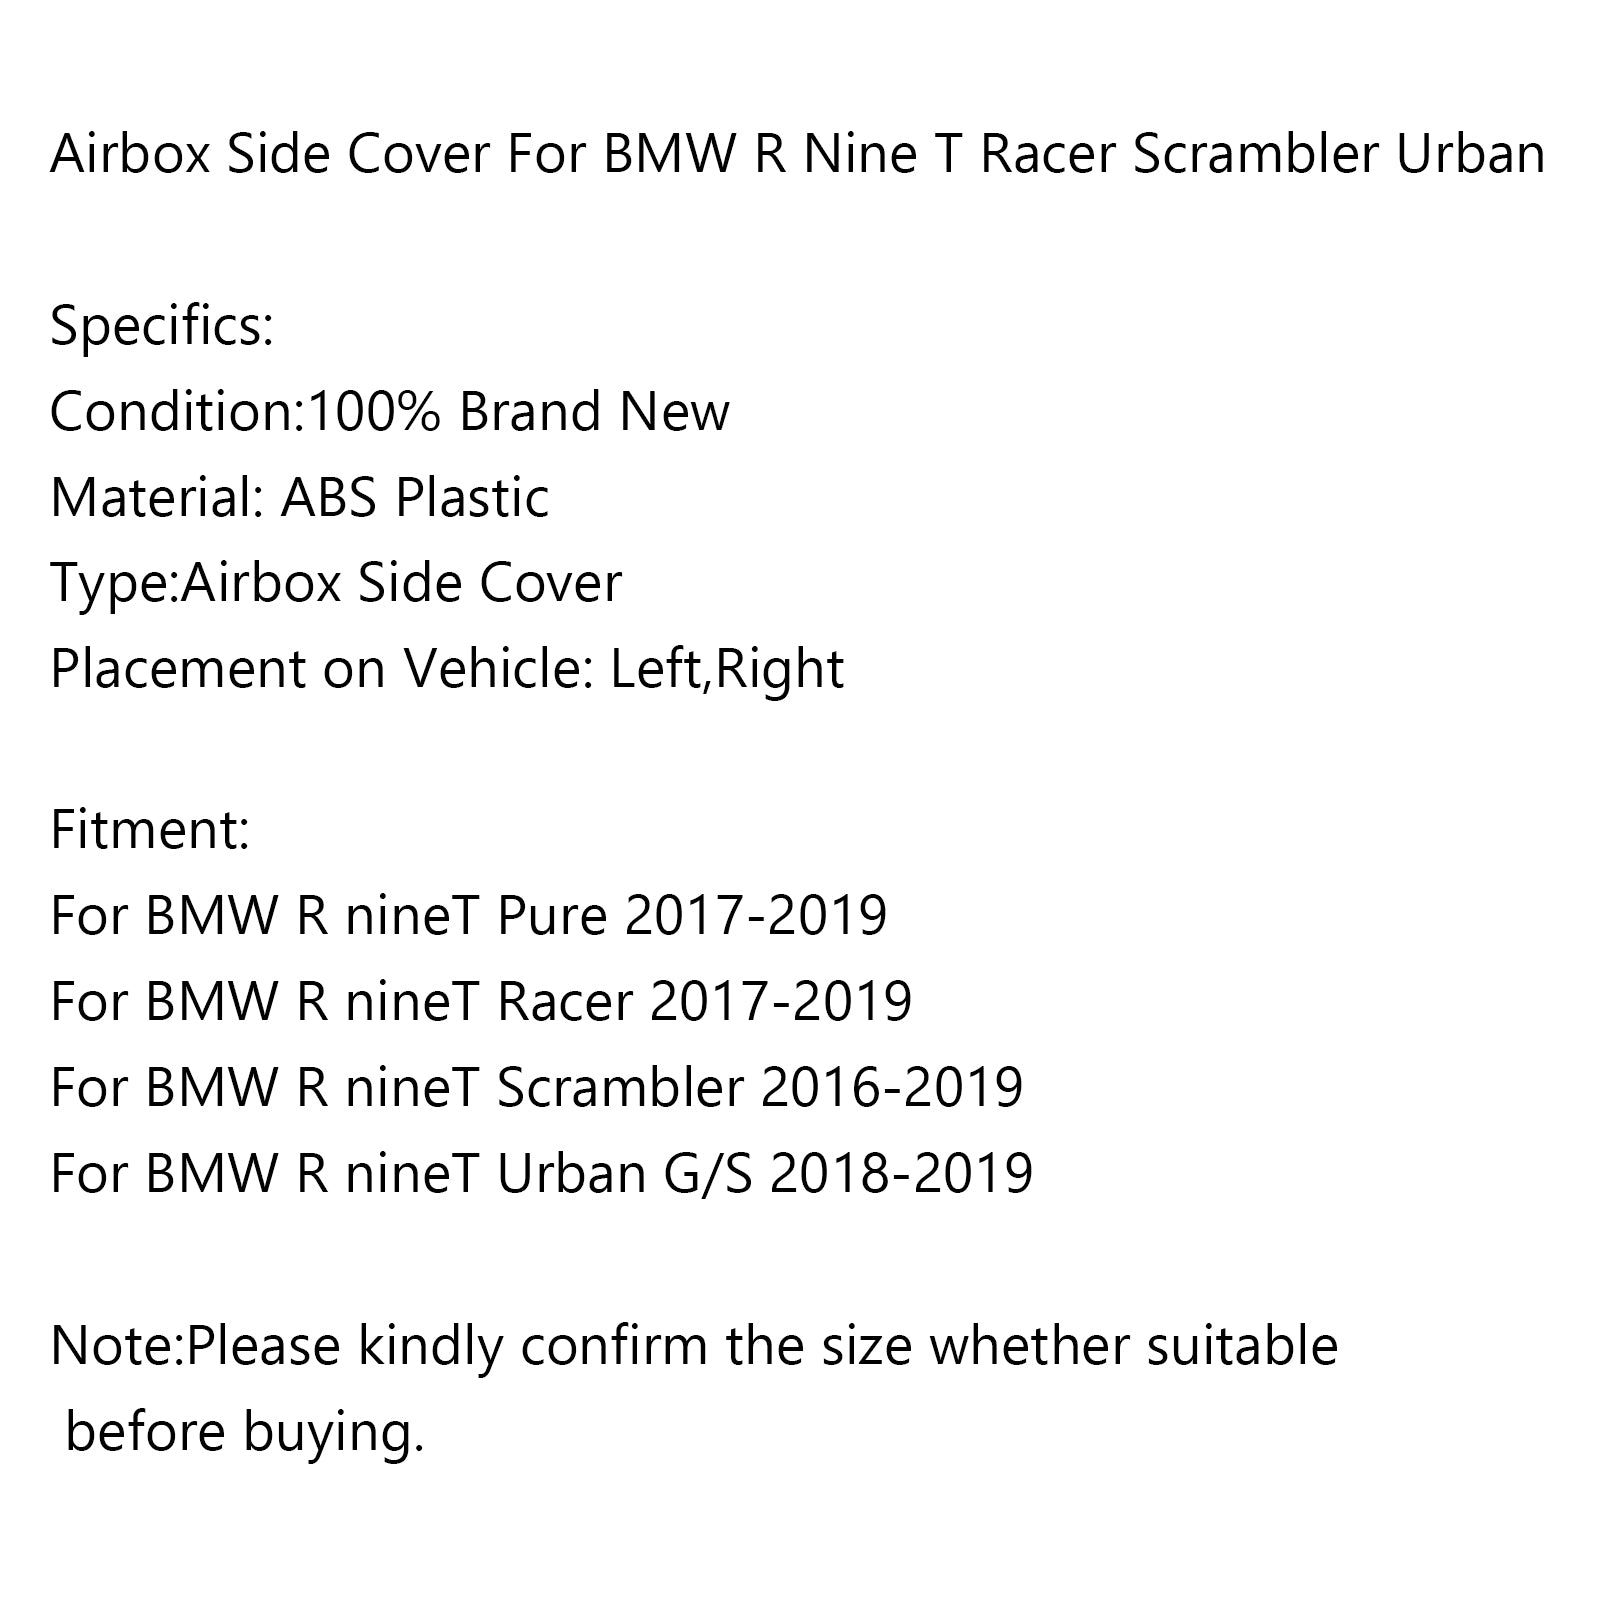 Protezione della copertura del telaio dell'airbox per BMW R Nine T Racer Scrambler Urban 2016-2019